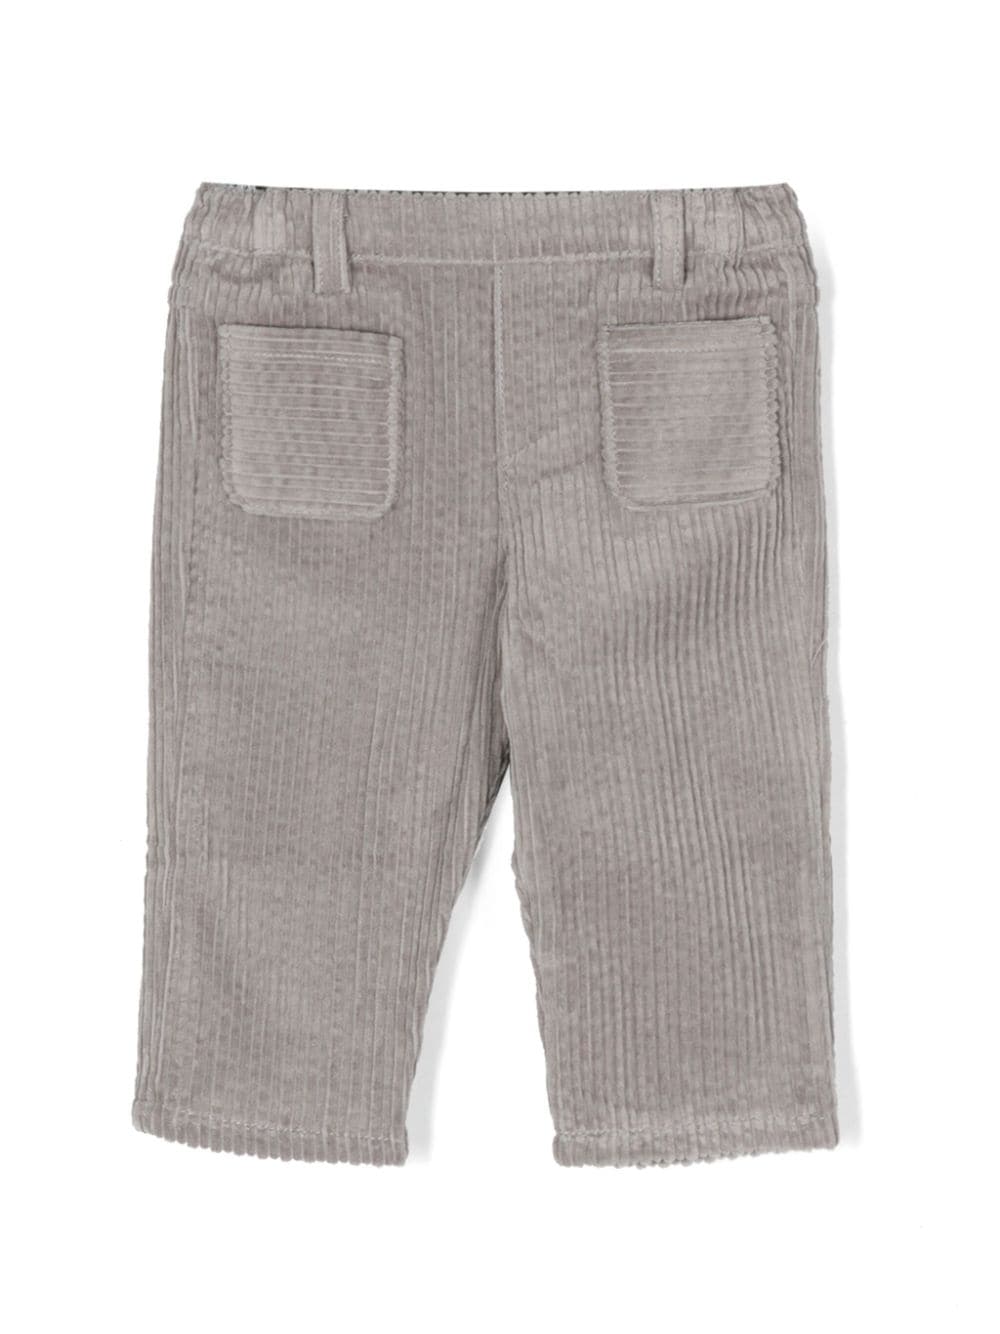 Pantalon gris clair unisexe bébé